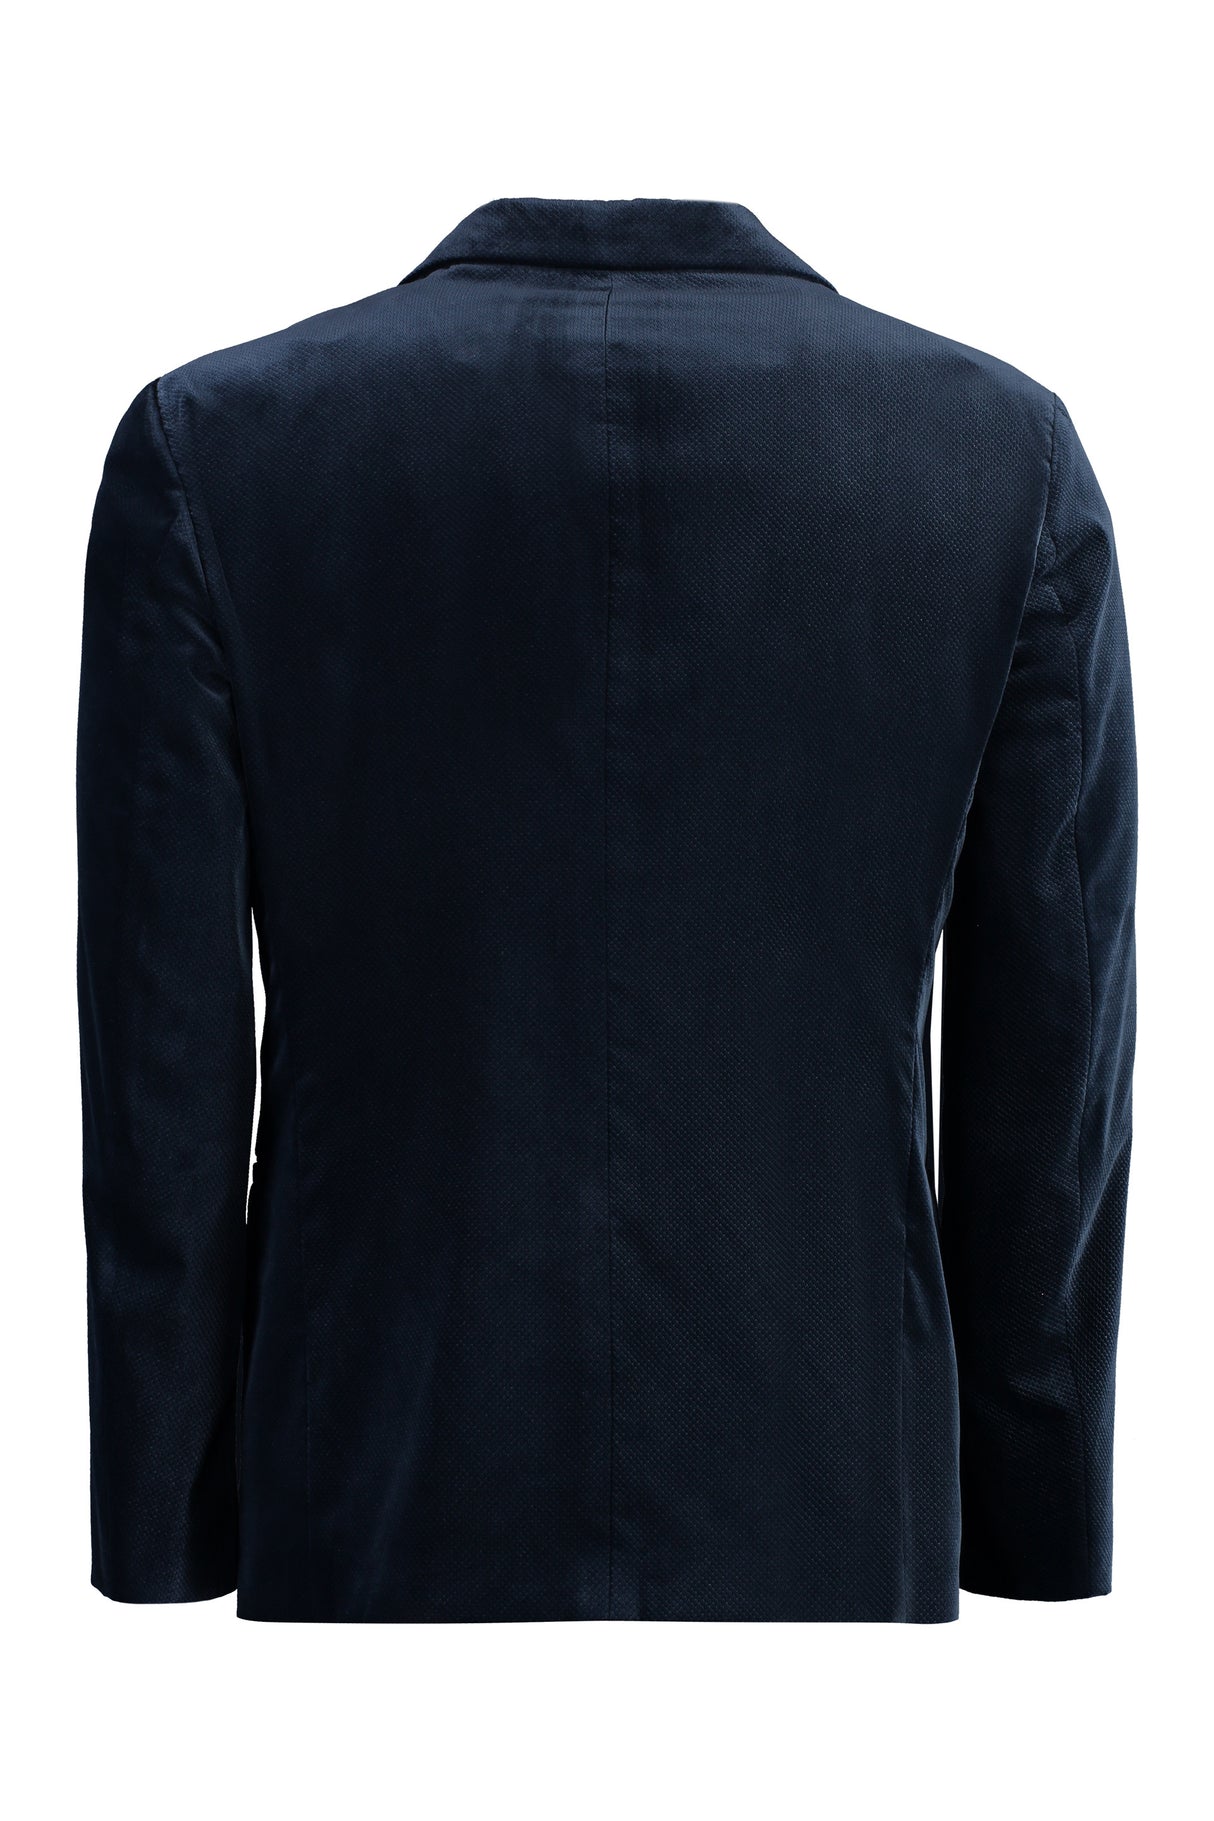 Áo Jacket Nam Vải Velvet xanh cho mùa Thu Đông 23